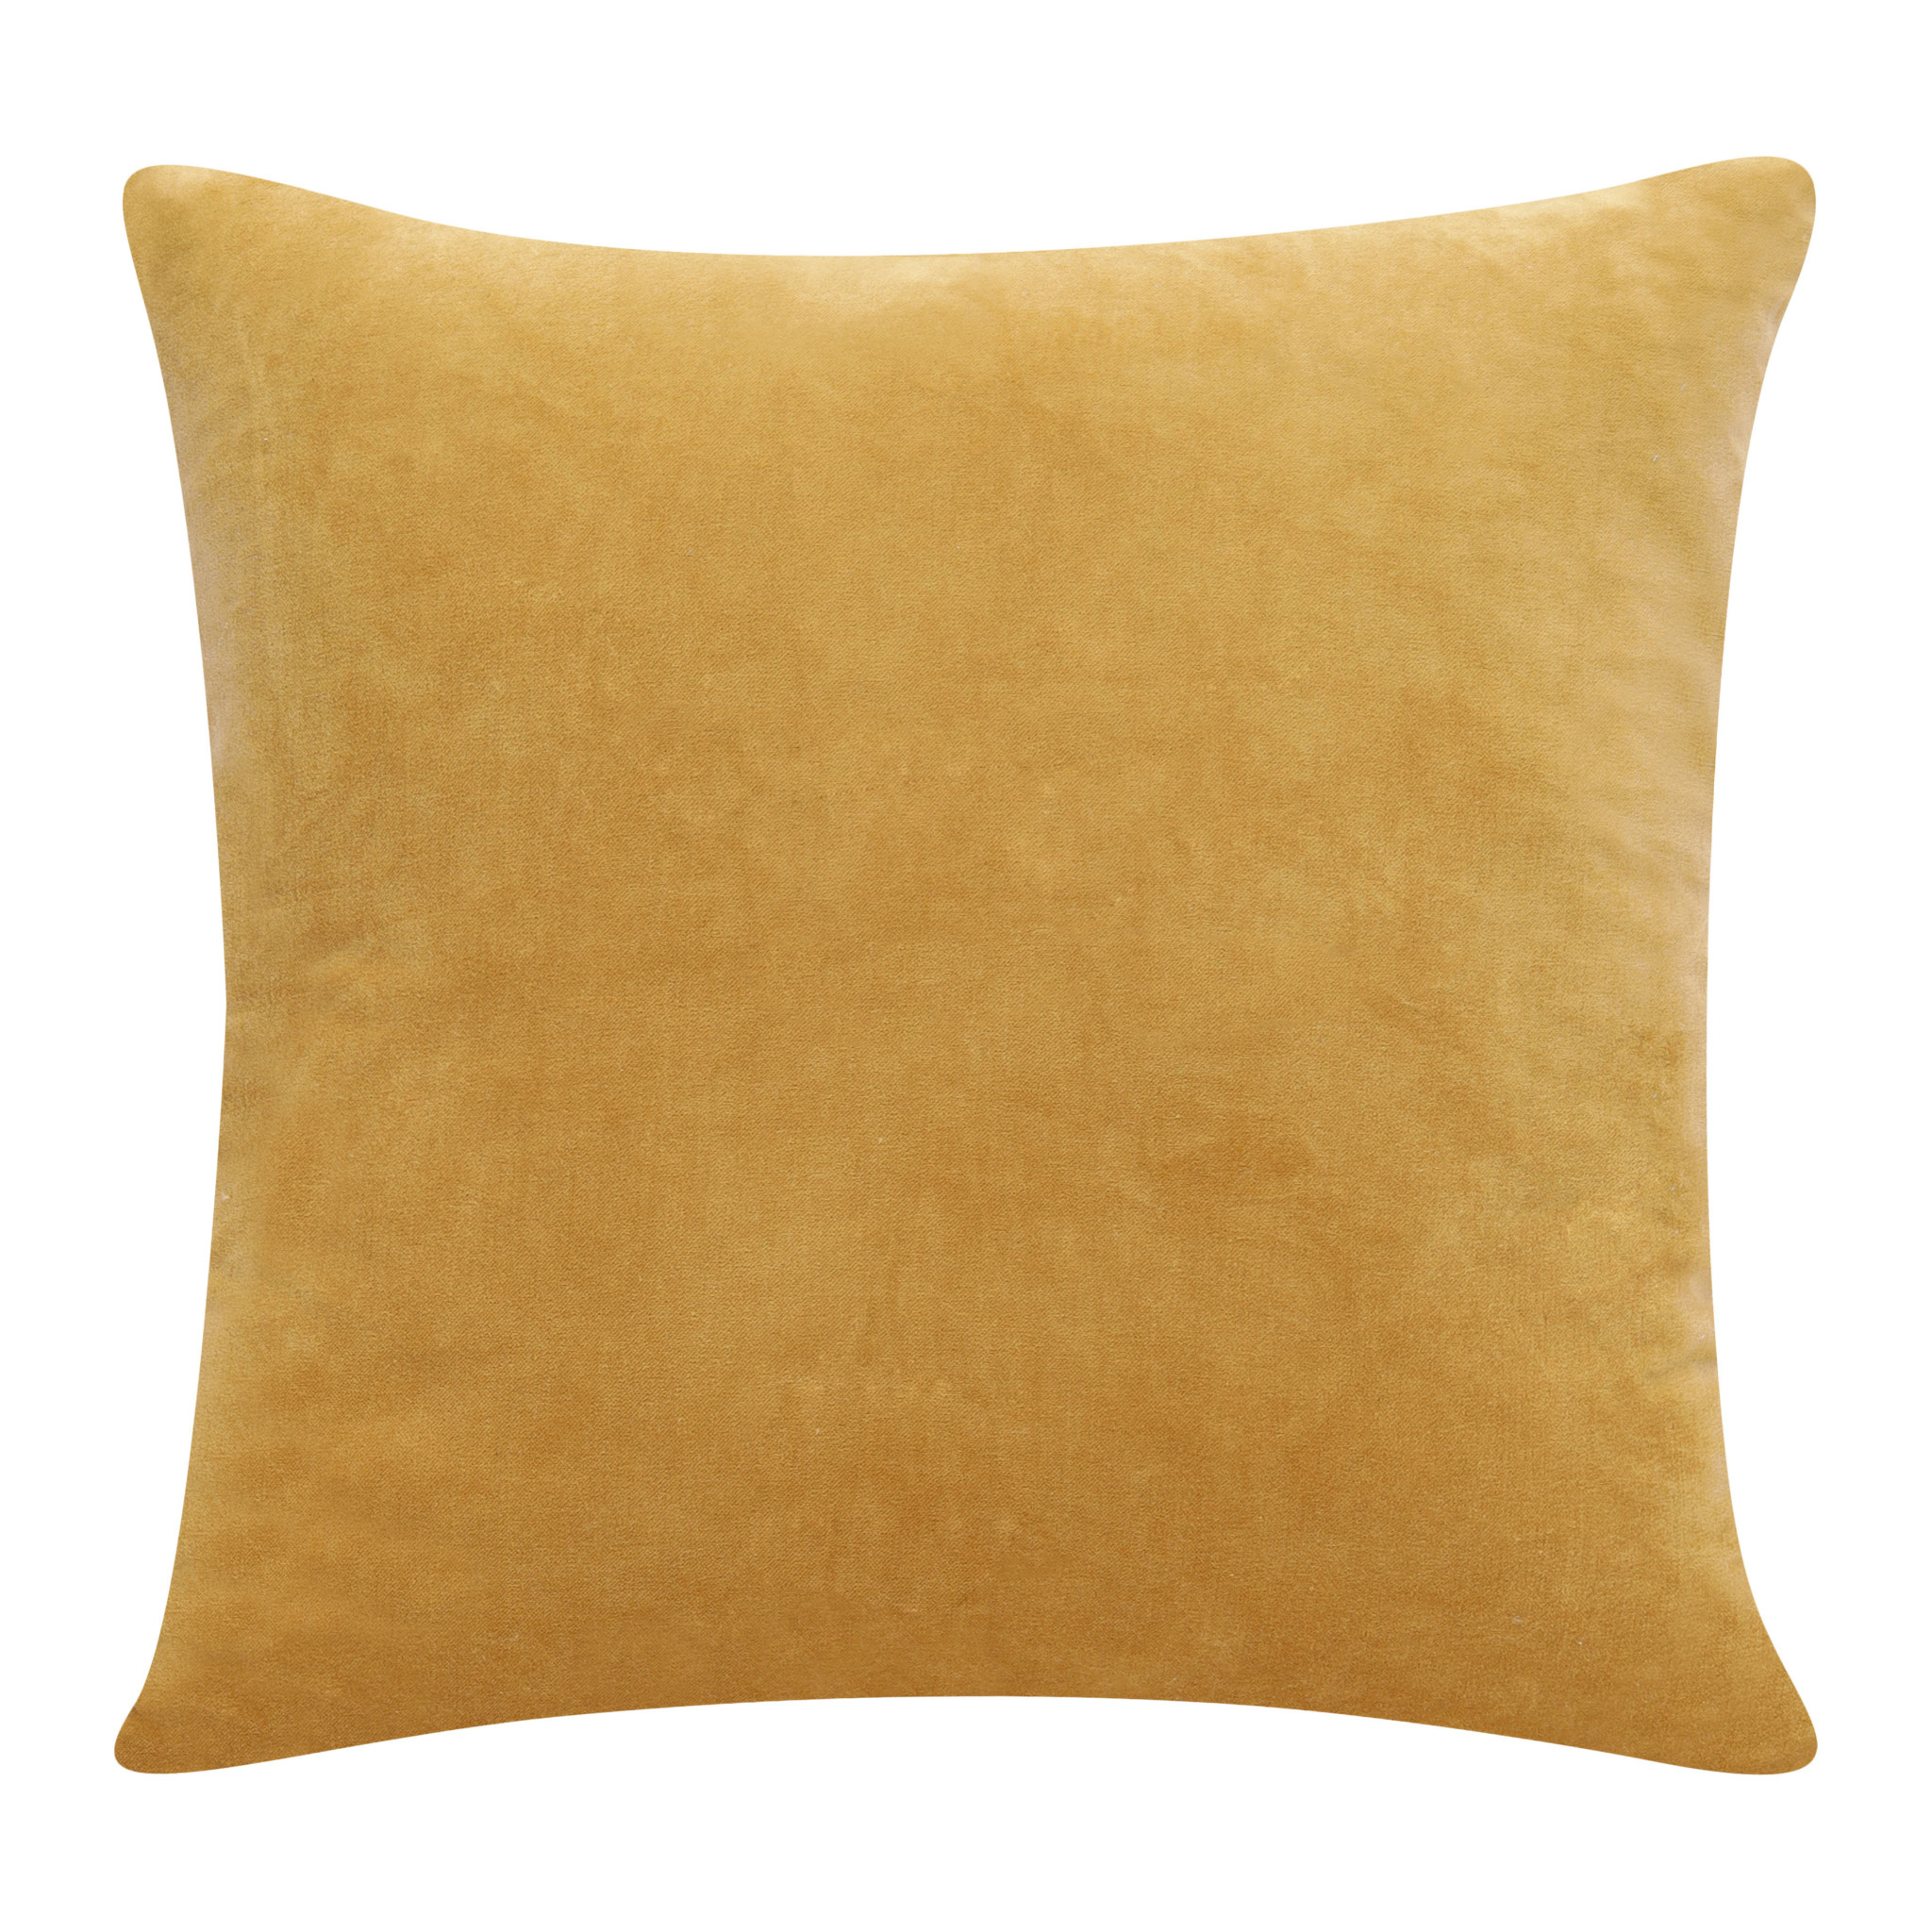 20" X 20" Yellow 100% Cotton Zippered Pillow-517050-1